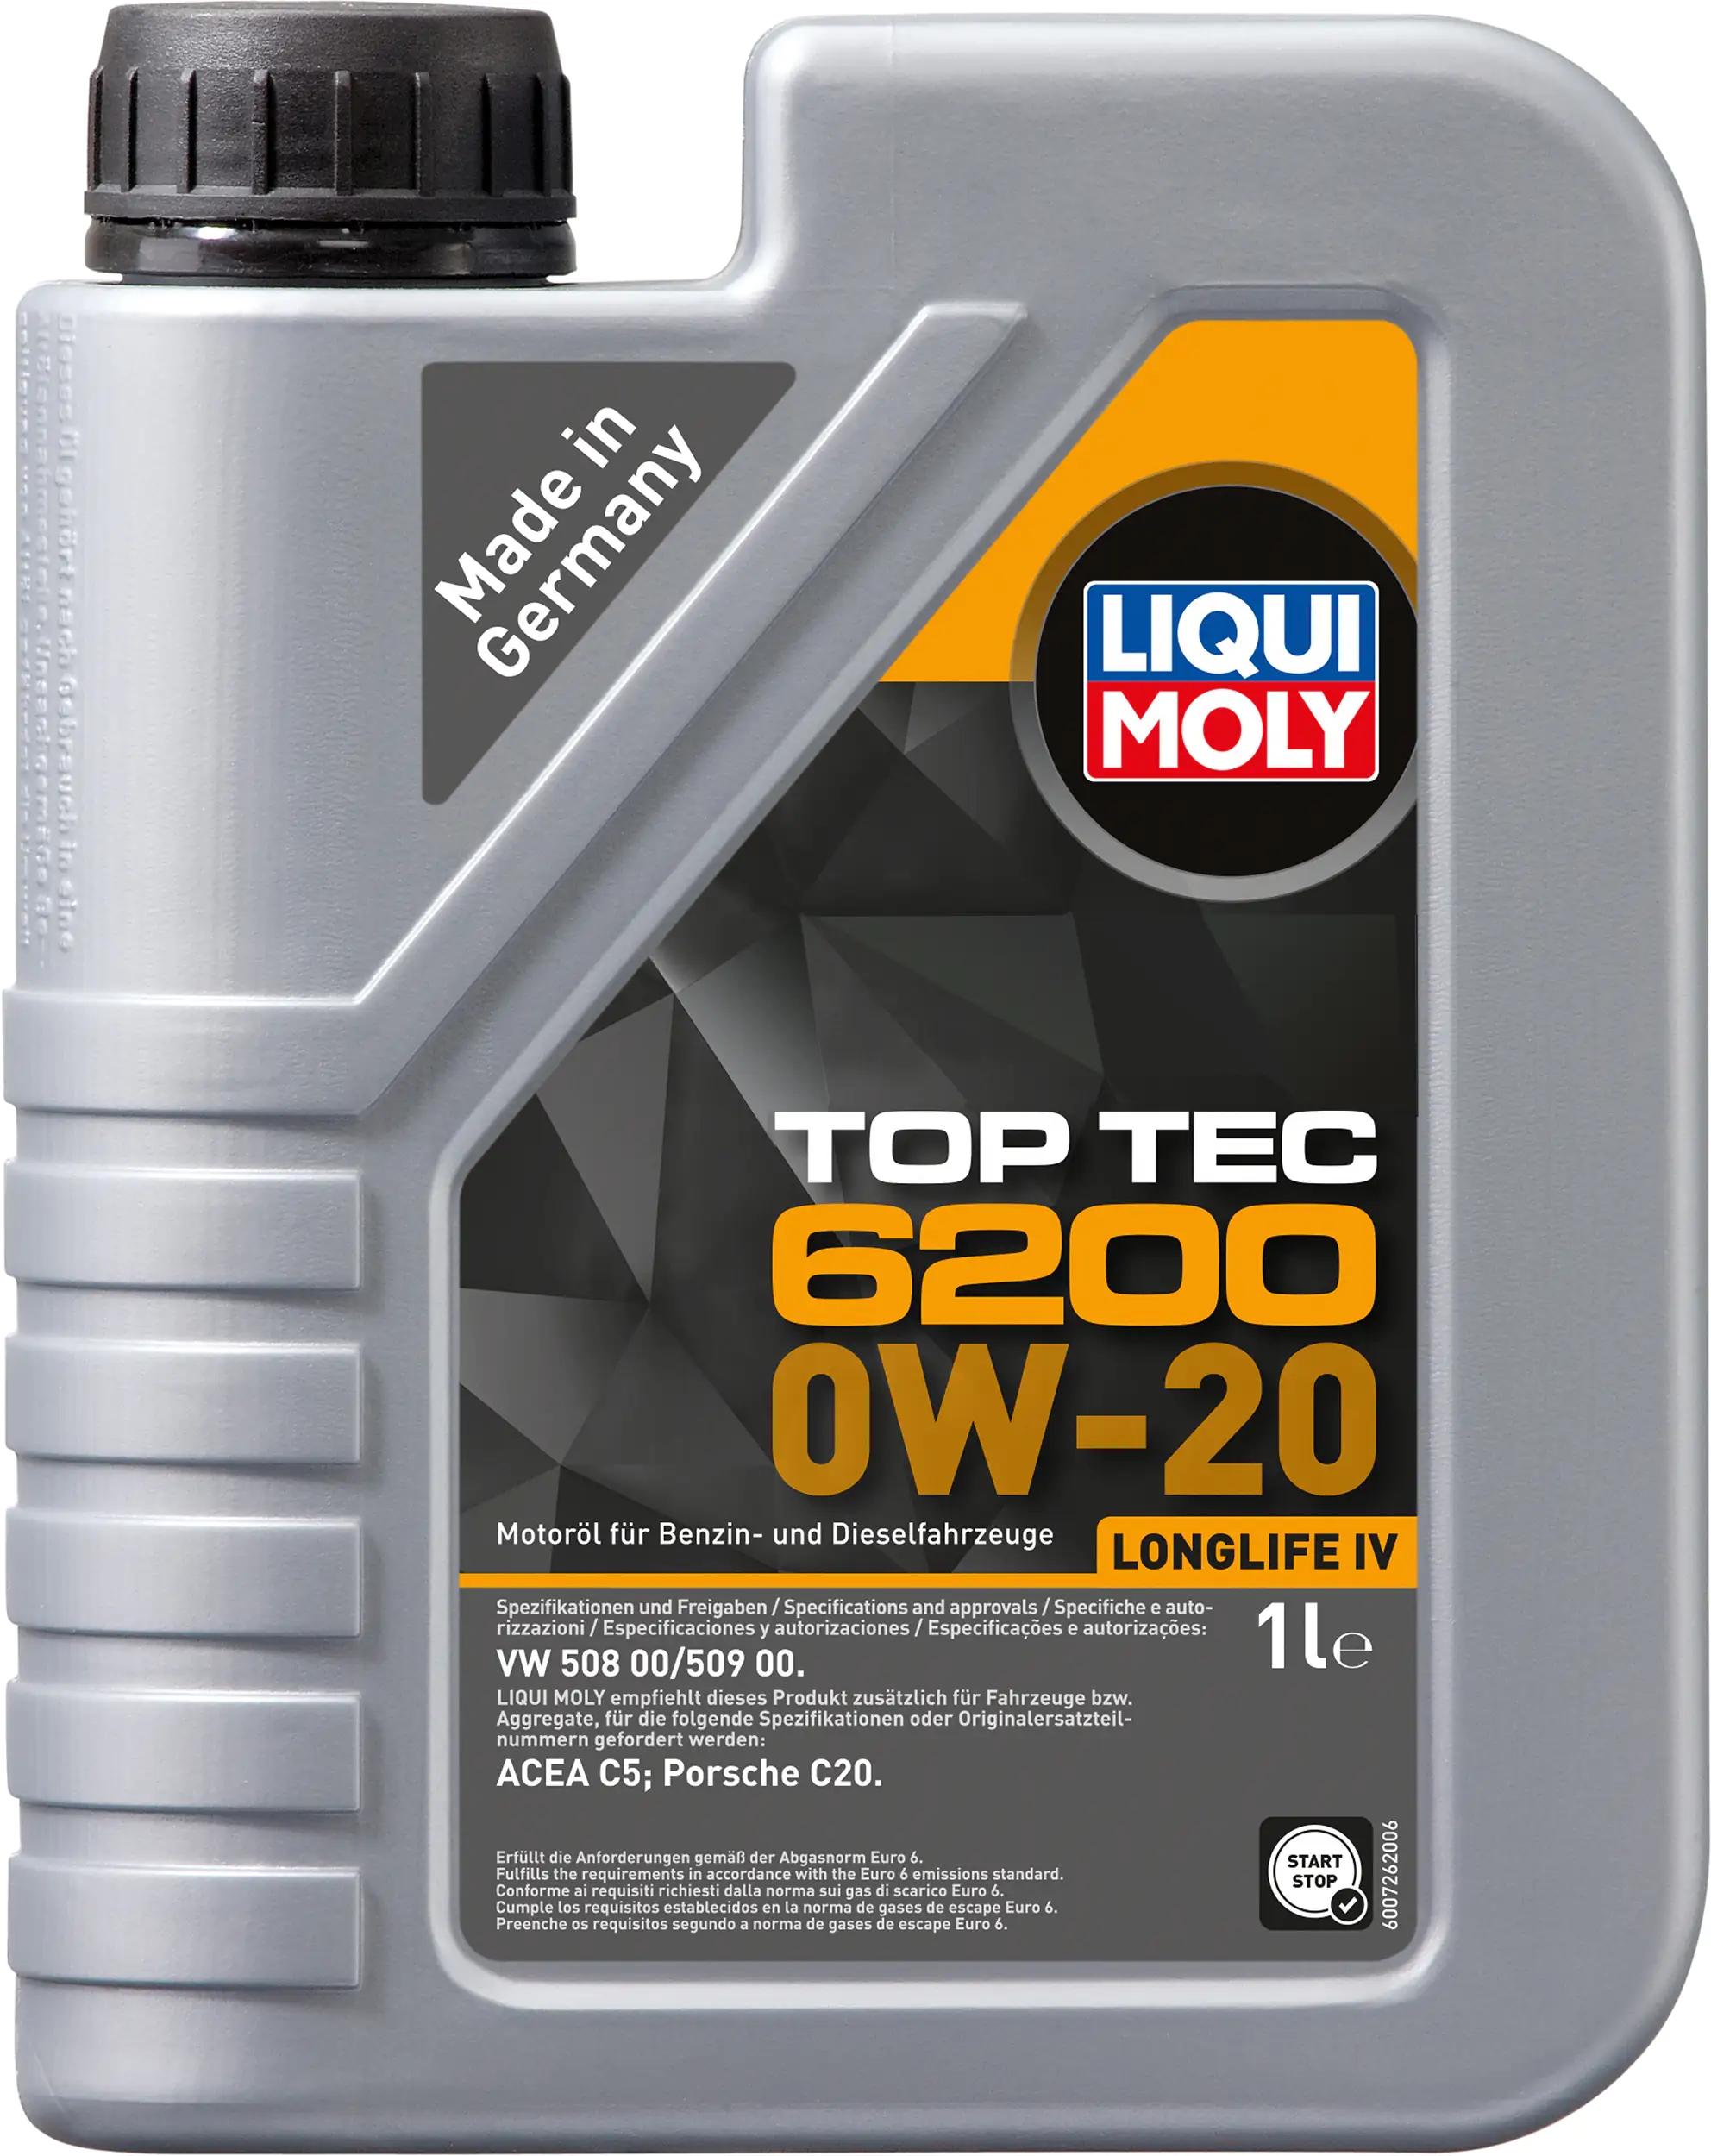 Liqui Moly Motoröl Top Tec 6200 0W-20 1 L kaufen